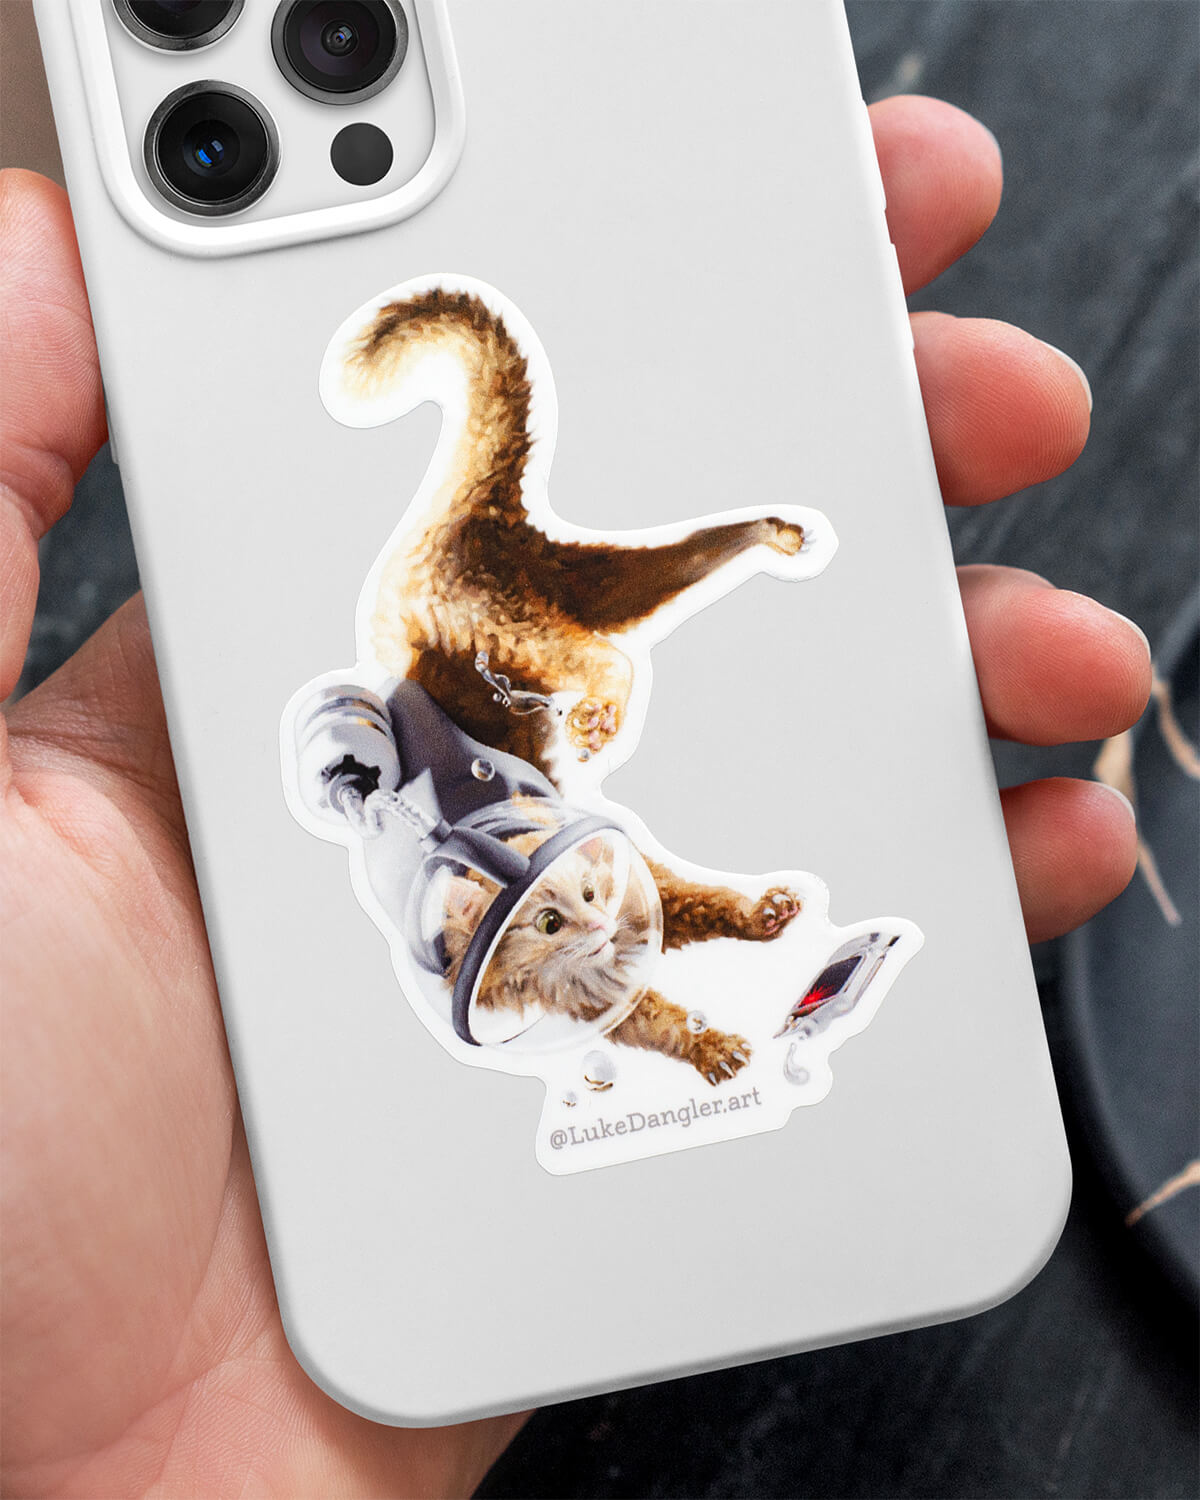 Space Cat Sticker